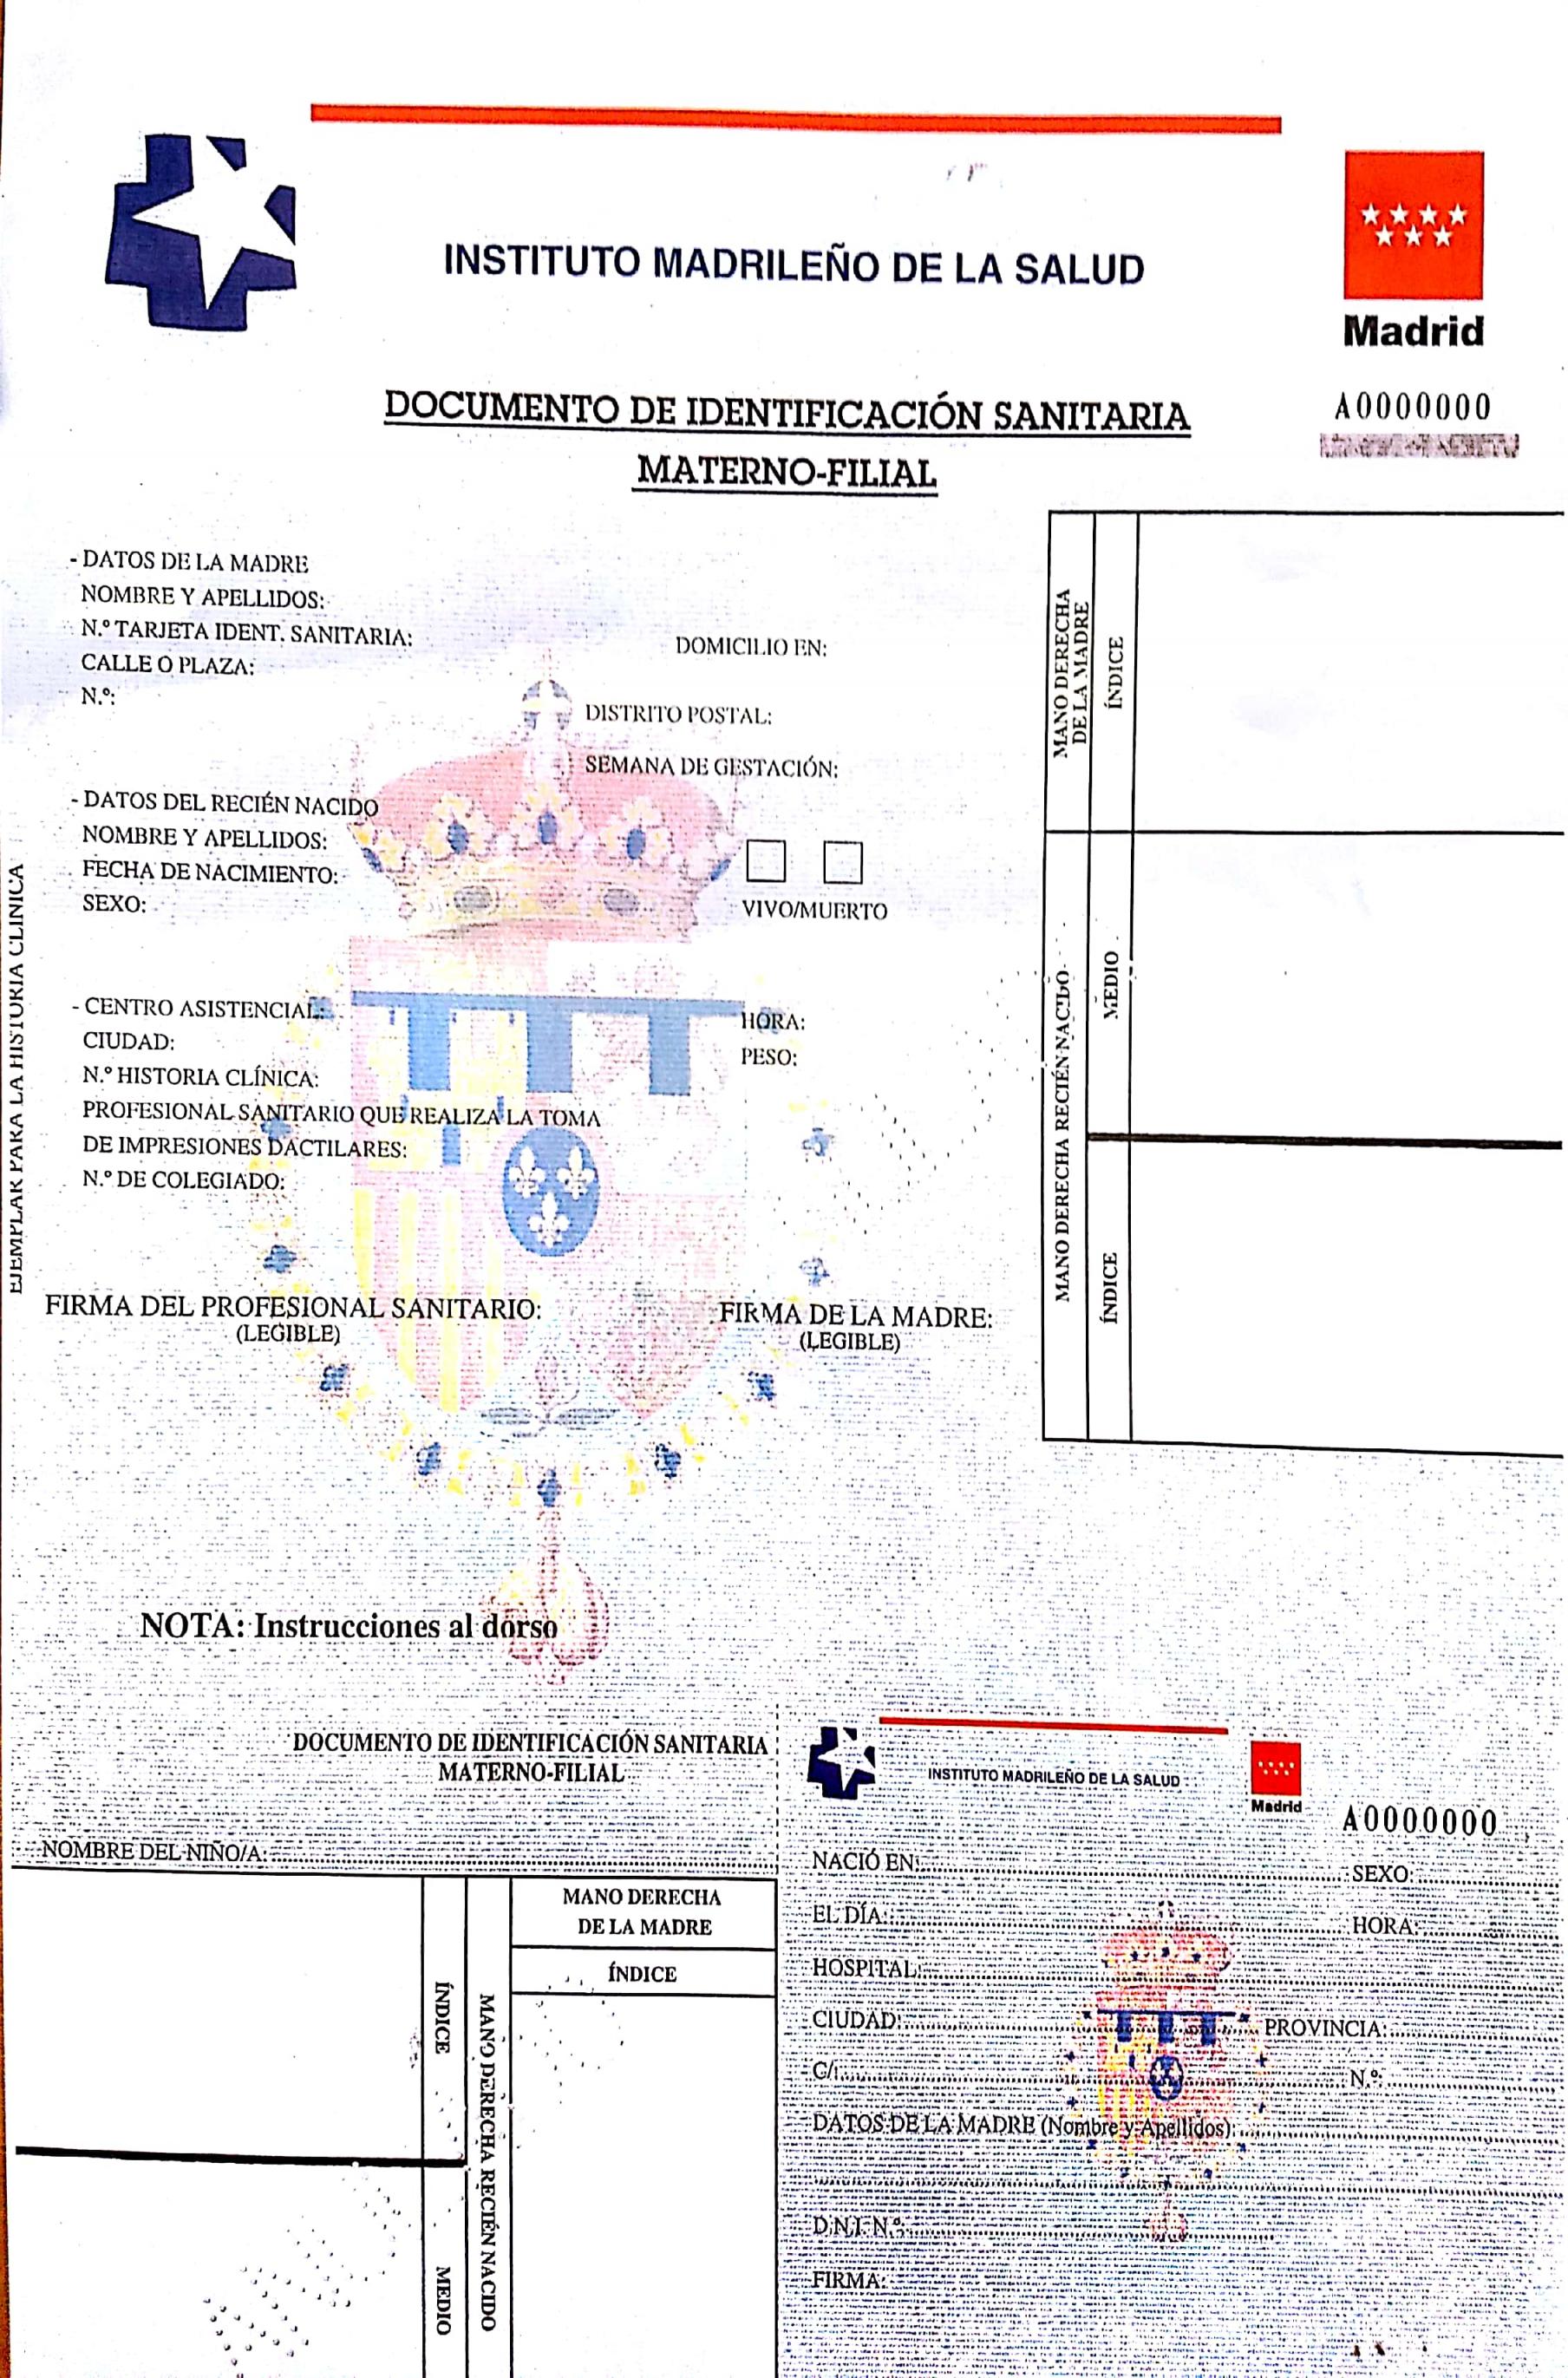 Documento de Identificación Sanitaria materno-filial del Insituto Madrileño de la Salud.